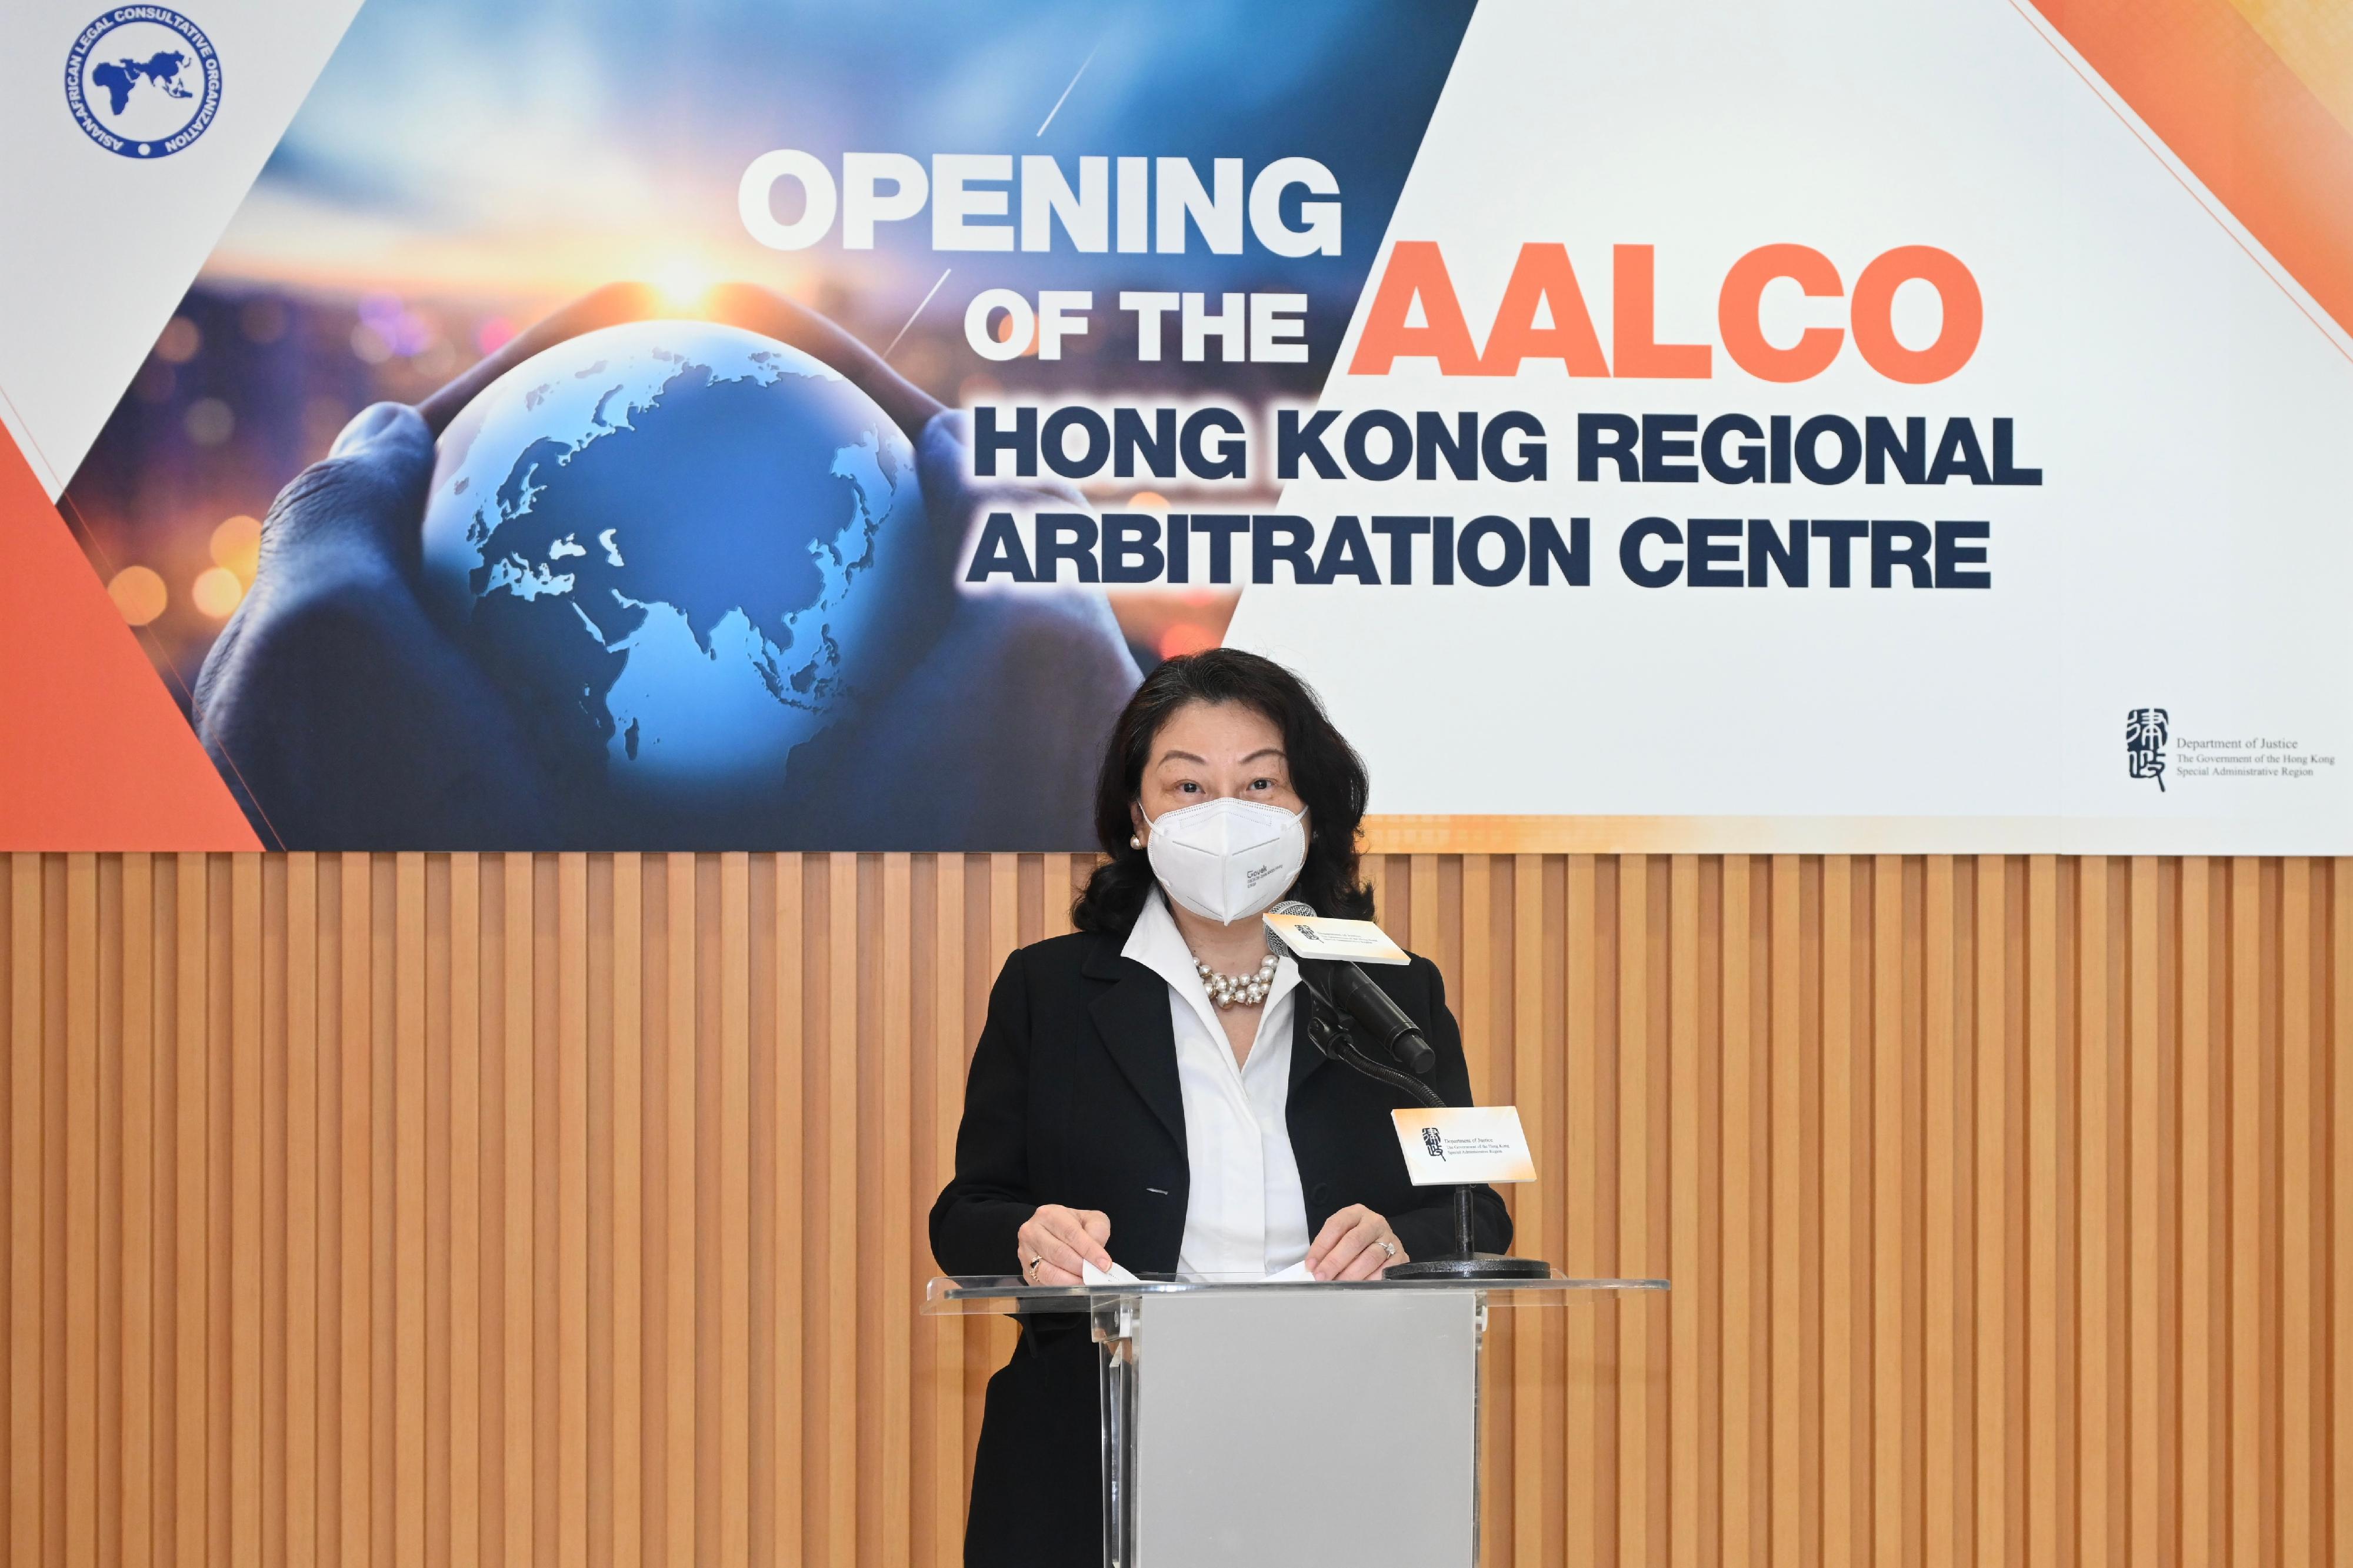 亞非法協香港區域仲裁中心今日（五月二十五日）正式開幕。圖示律政司司長鄭若驊資深大律師在開幕禮致辭。